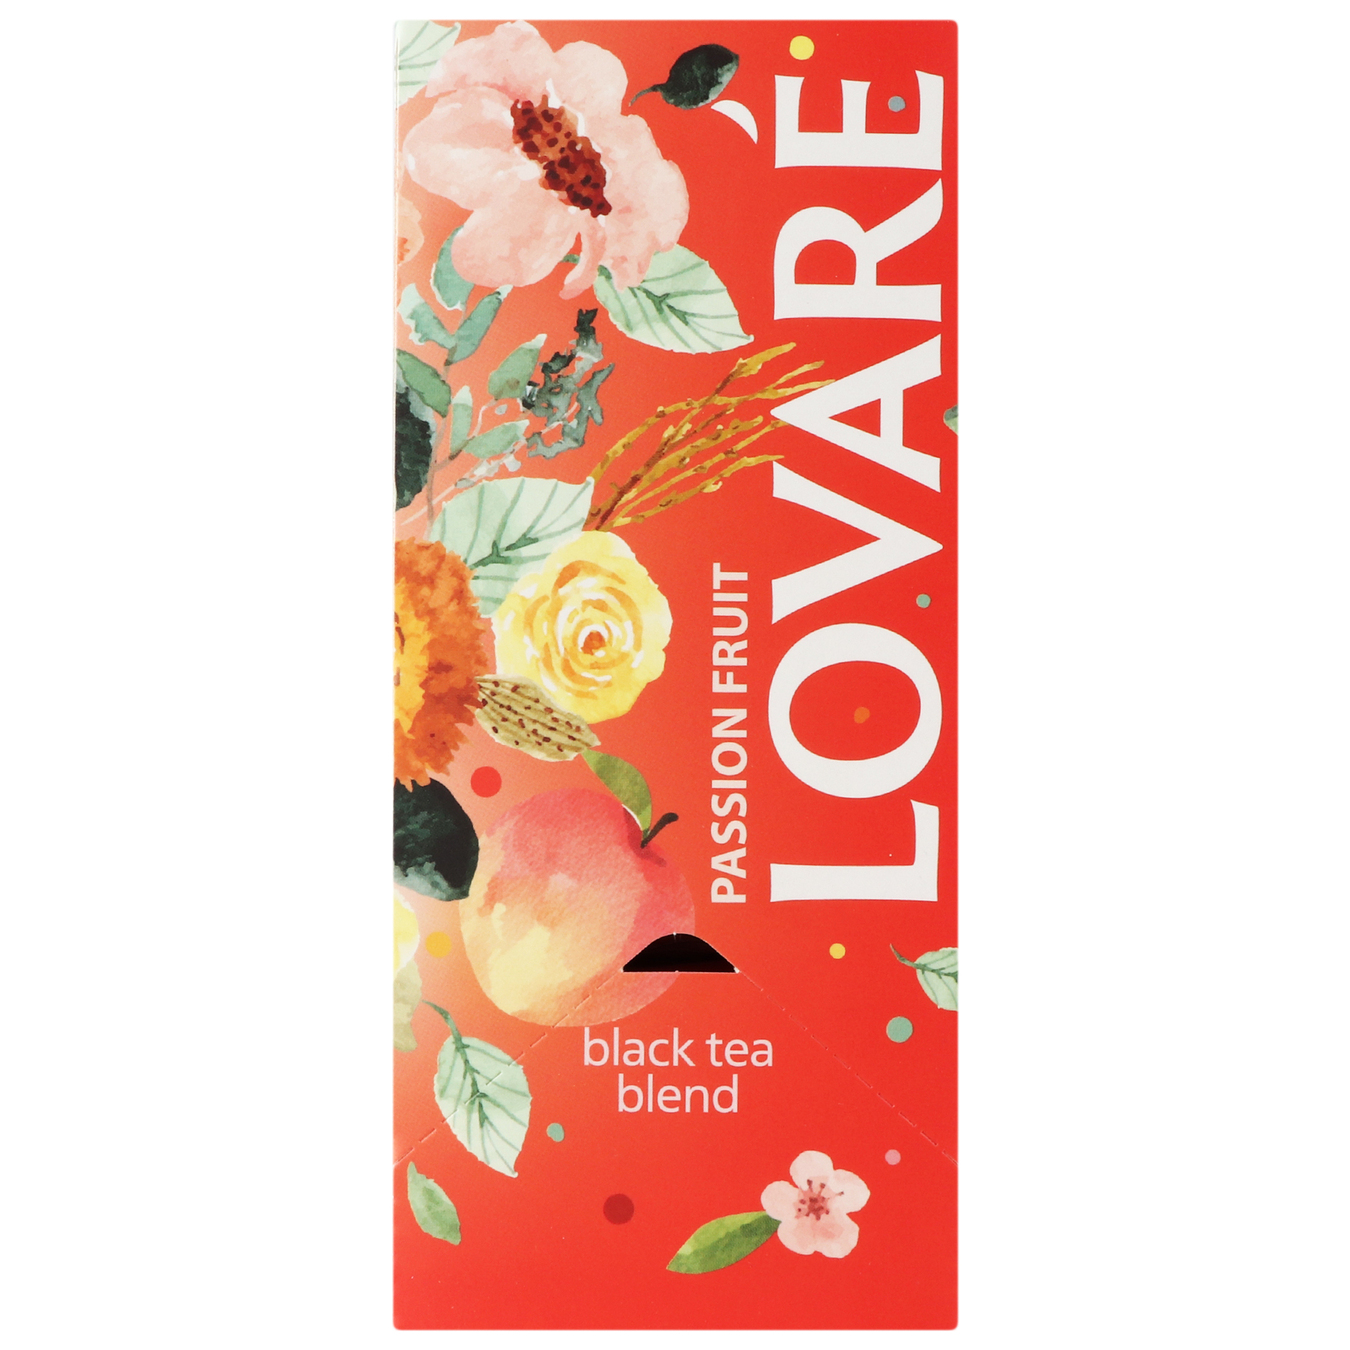 Lovare Passion fruit Black tea 24pcs 2g 3